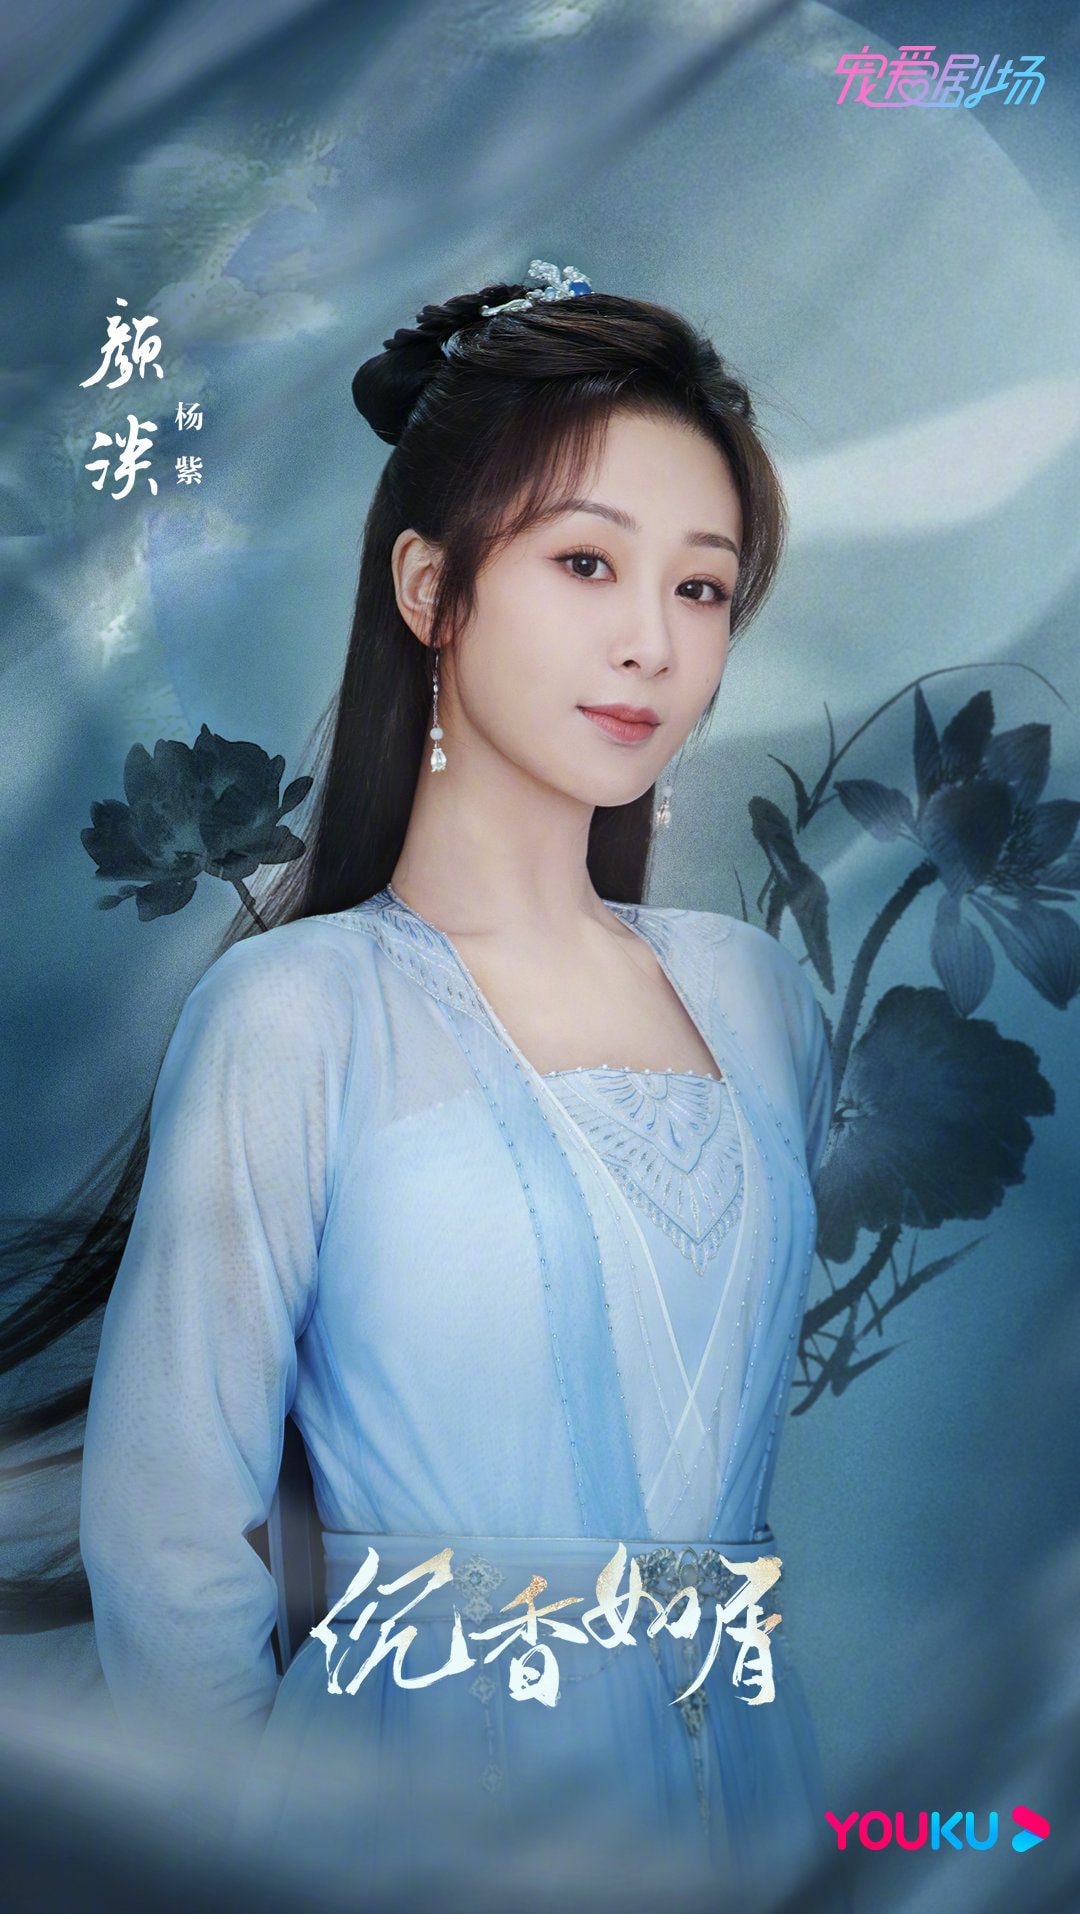 Dương Tử xuất hiện xinh đẹp trong phim cổ trang mới nhưng photoshop quá đà thế nào mà mặt bé ngang cổ  - Ảnh 3.